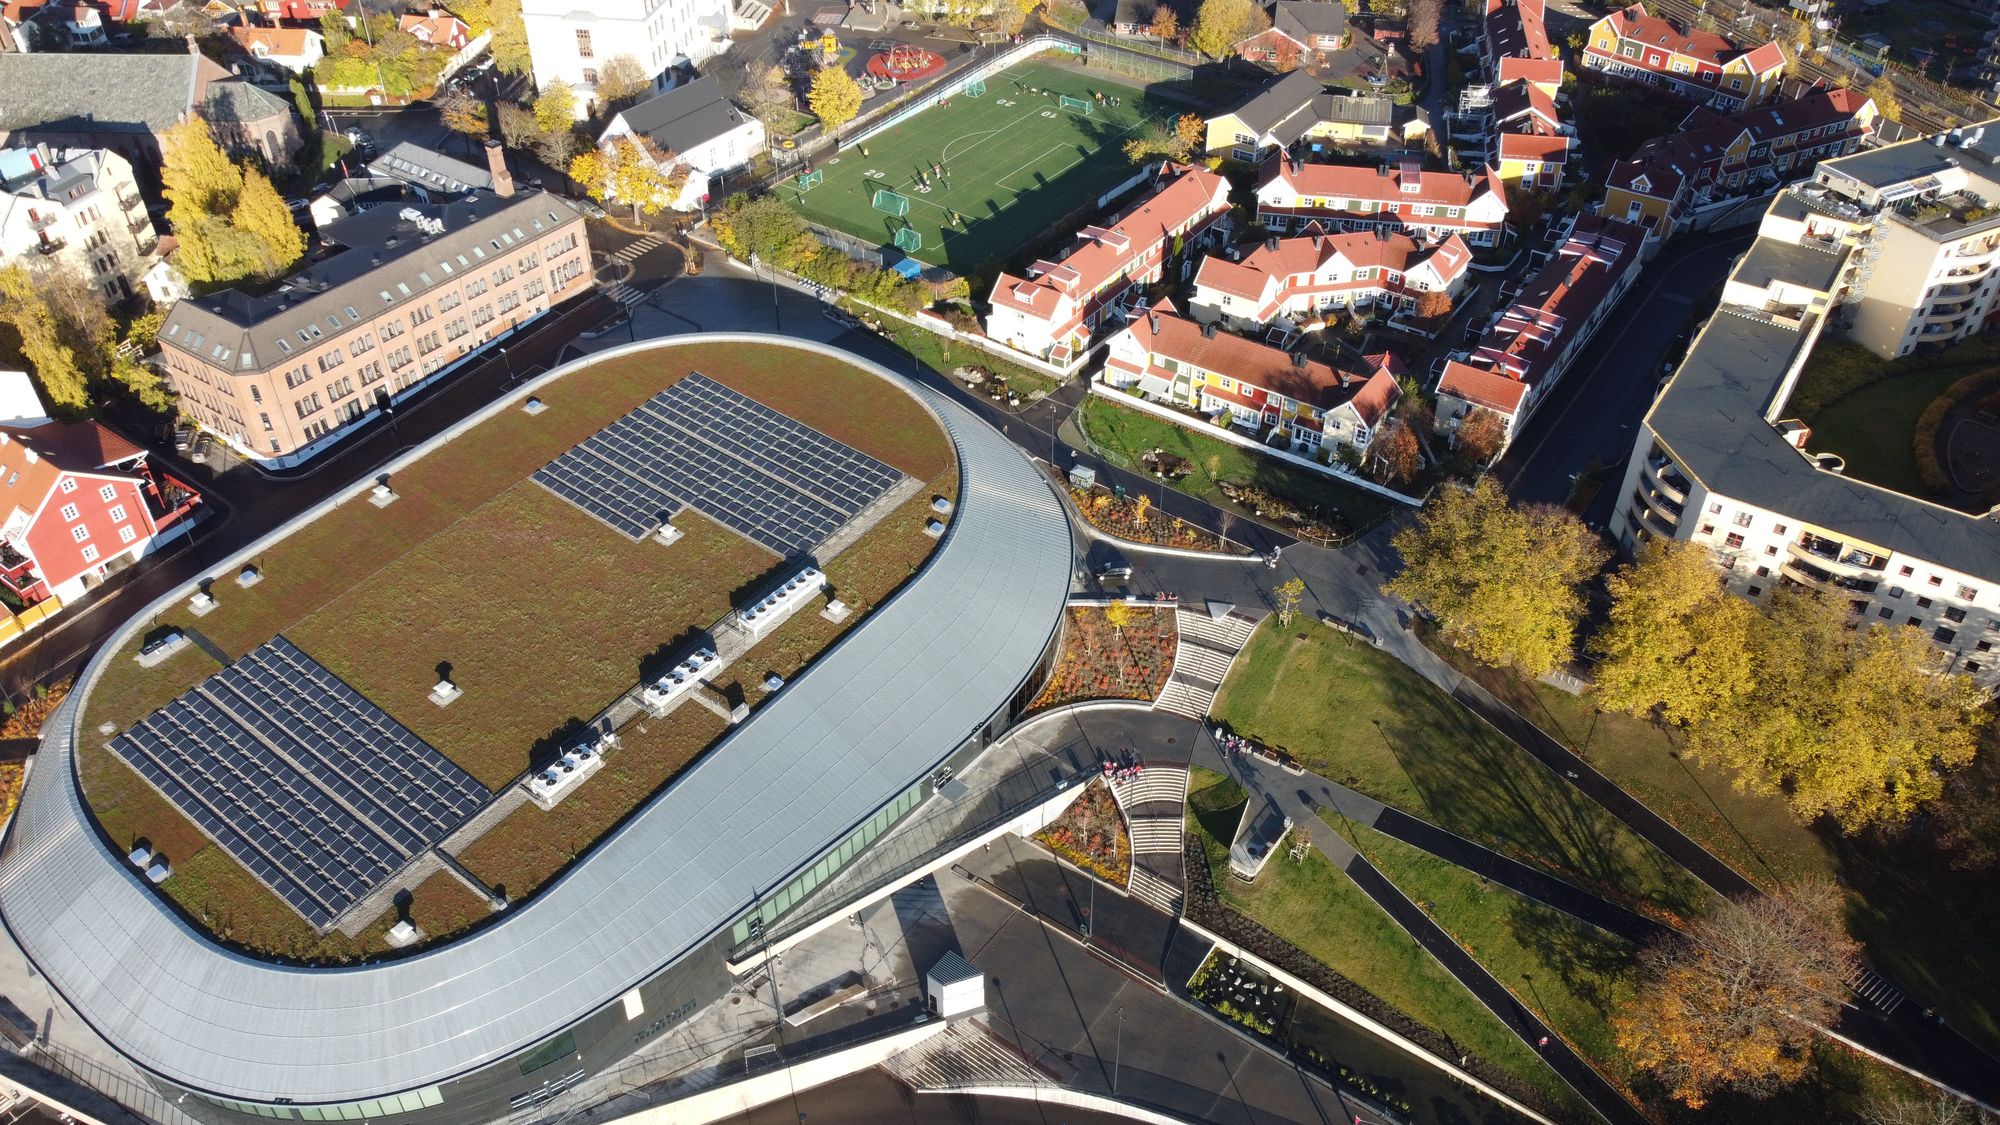 En av Oslos nyeste og fineste parker hadde ikke blitt den samme uten standarder